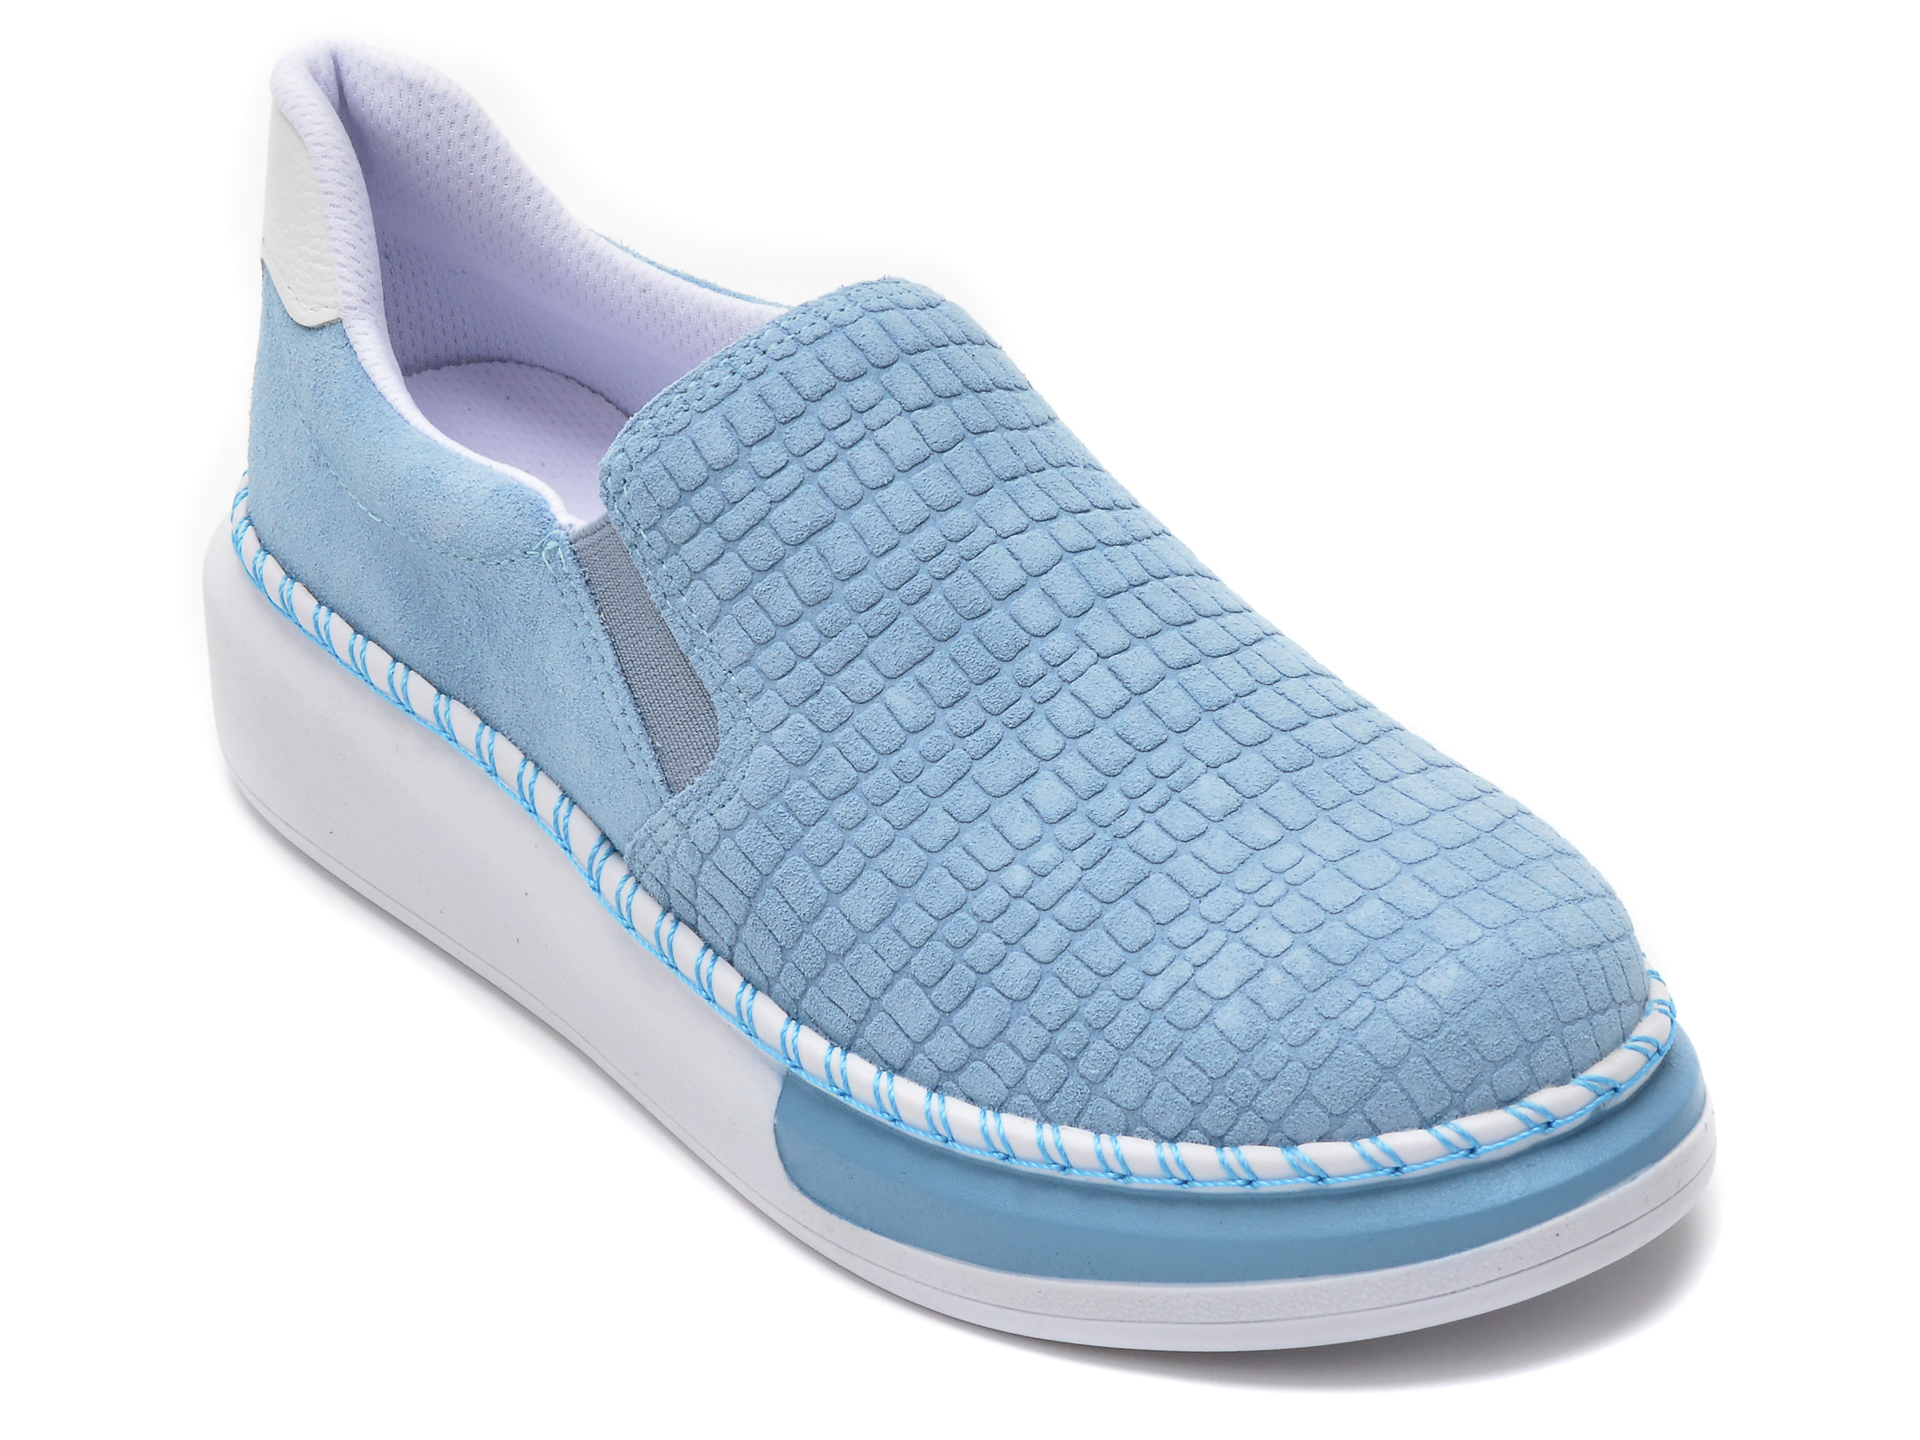 Pantofi FLAVIA PASSINI albastri, 3314019, din piele naturala 2022 ❤️ Pret Super Black Friday otter.ro imagine noua 2022